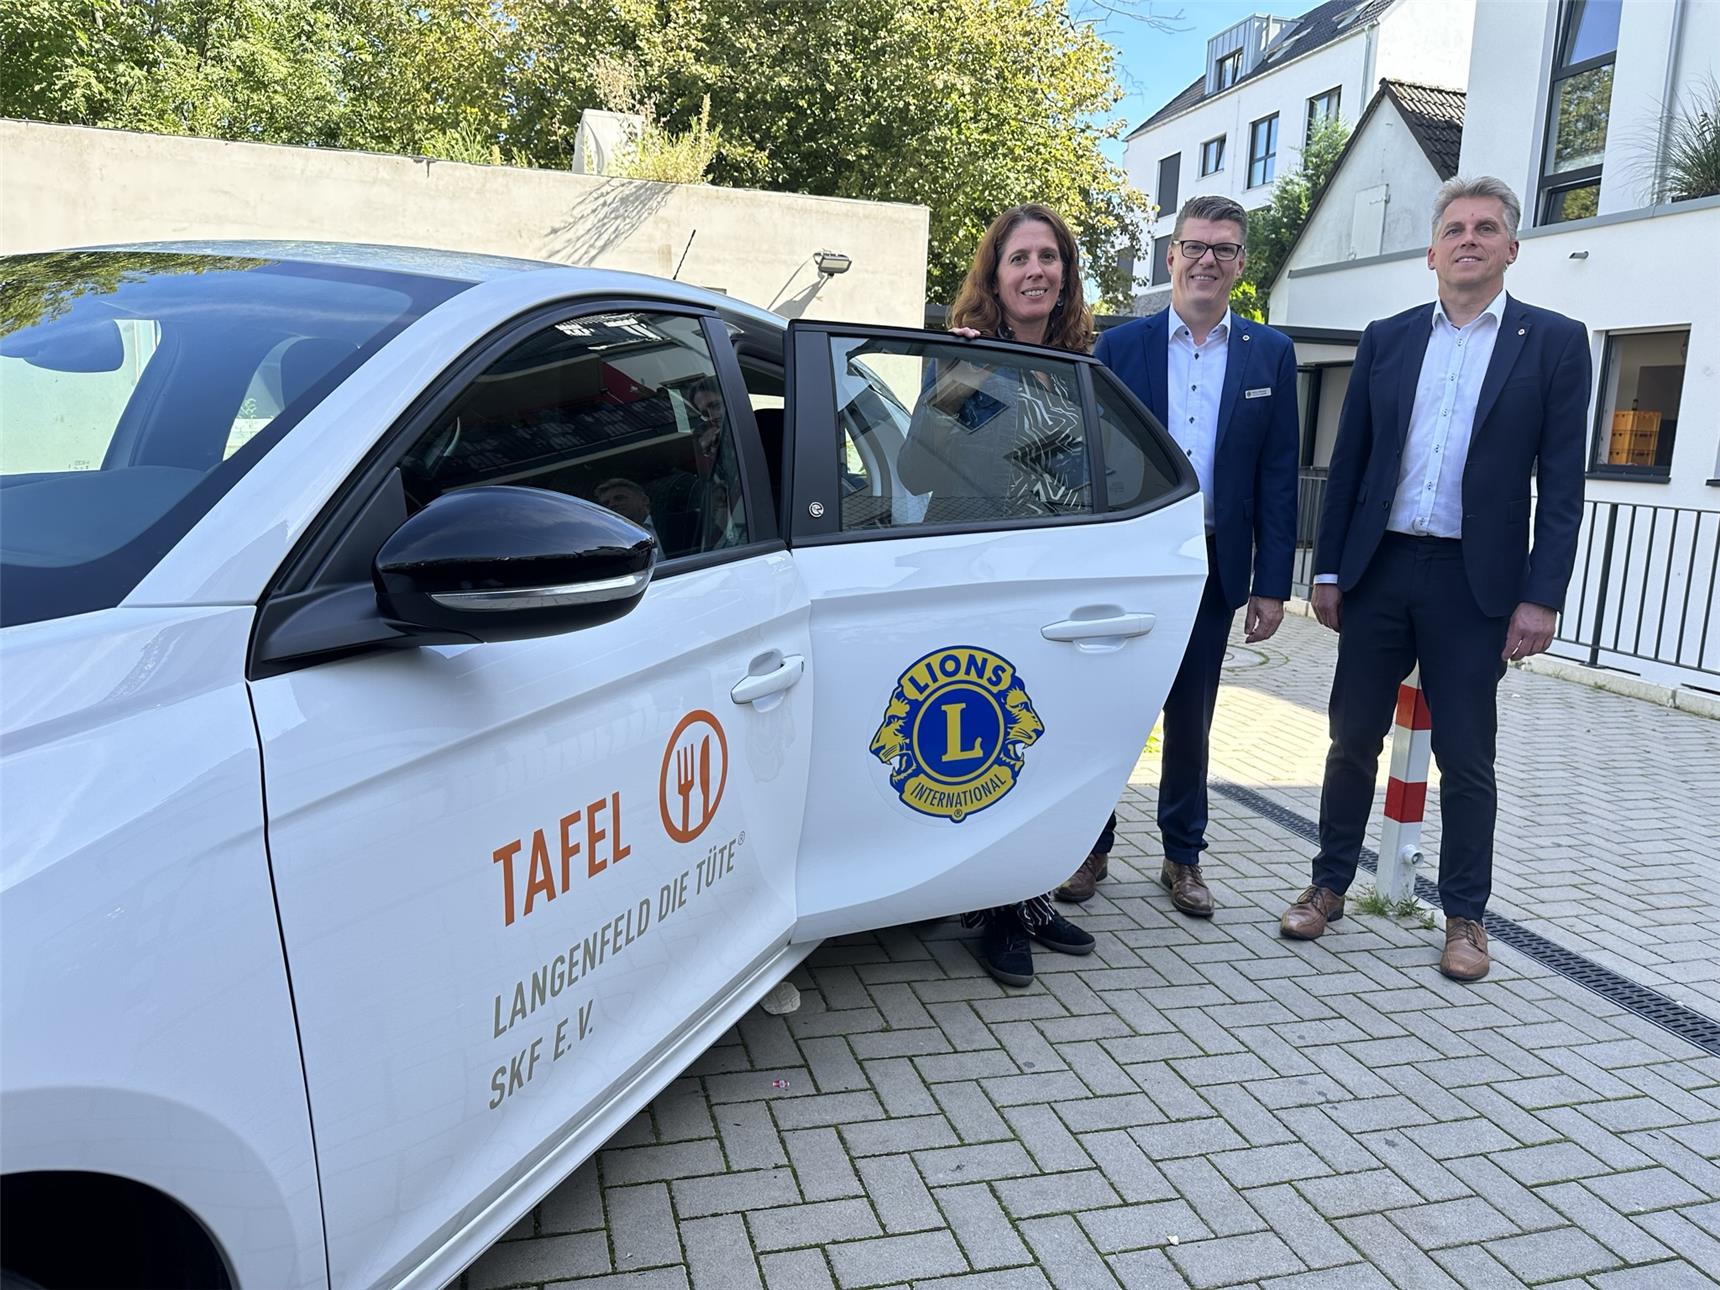 SkF Langenfeld: Ein E-Auto für die Tafel Langenfeld